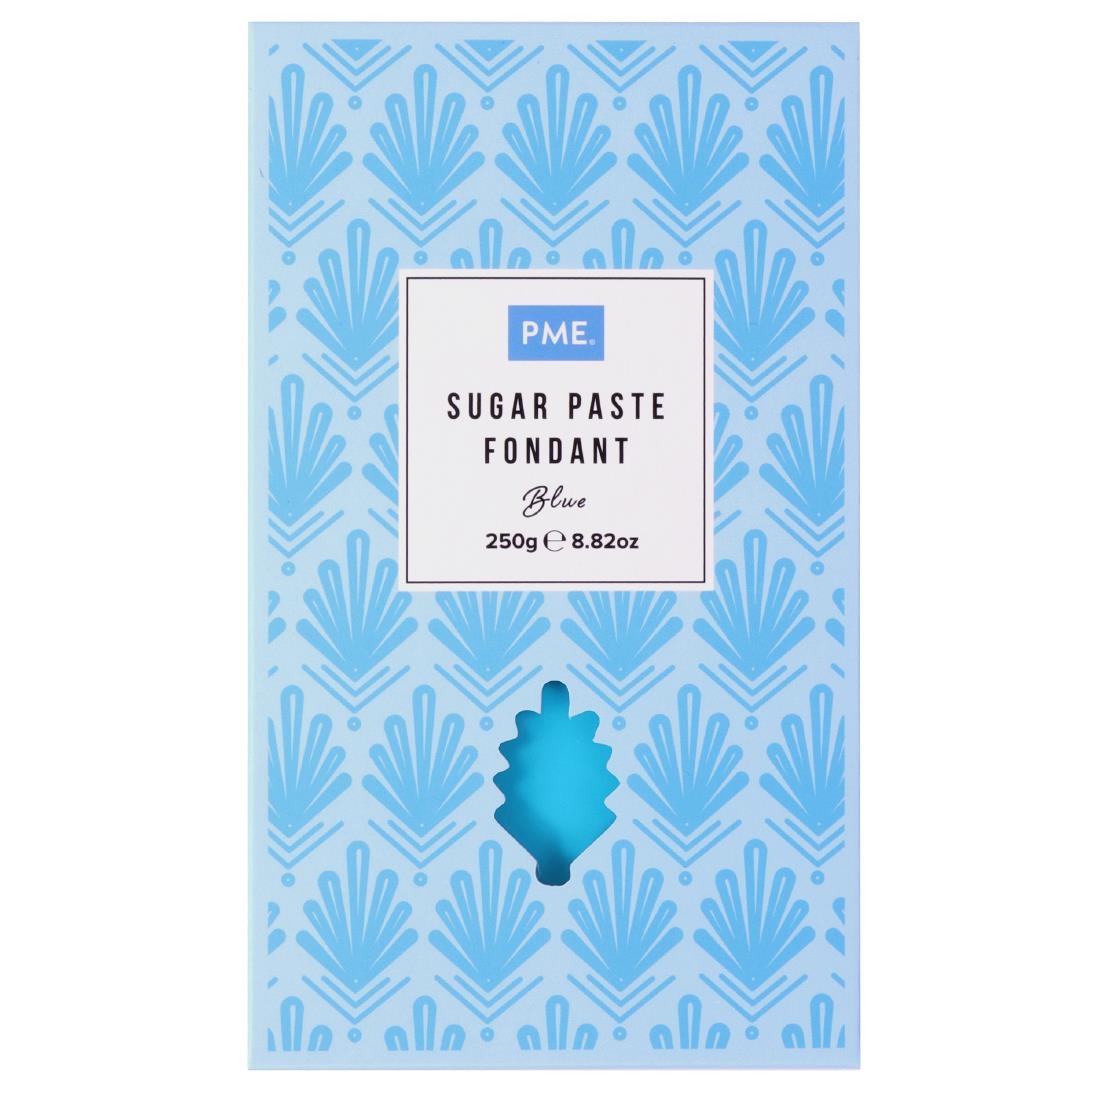 PME Sugar Paste Fondant Blue 250g (HU304)